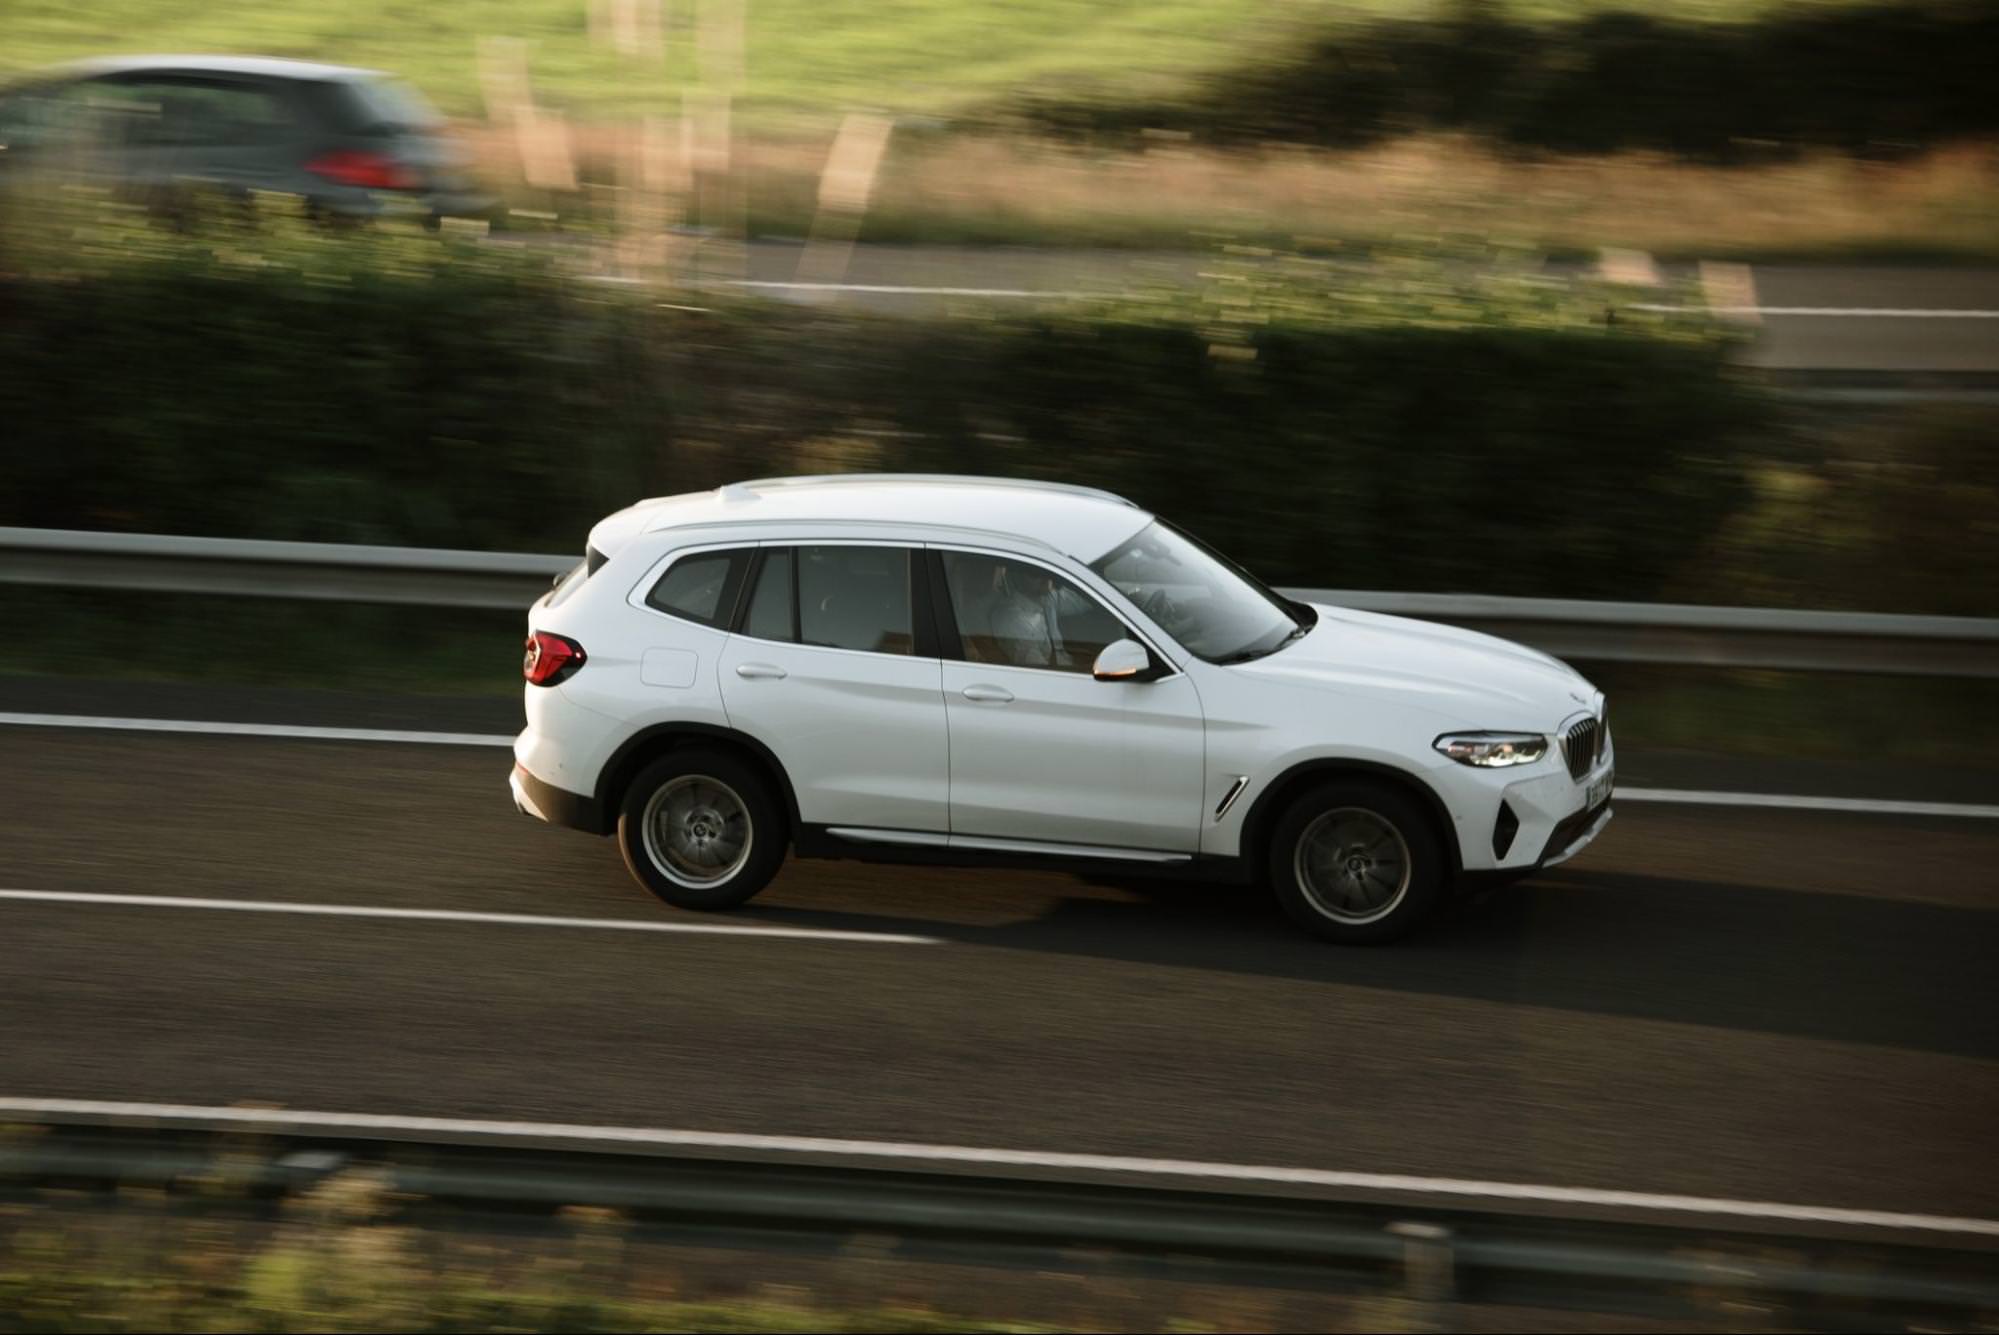 Biały SUV BMW X3 jadący autostradą, uchwycony w ruchu z rozmytym tłem.